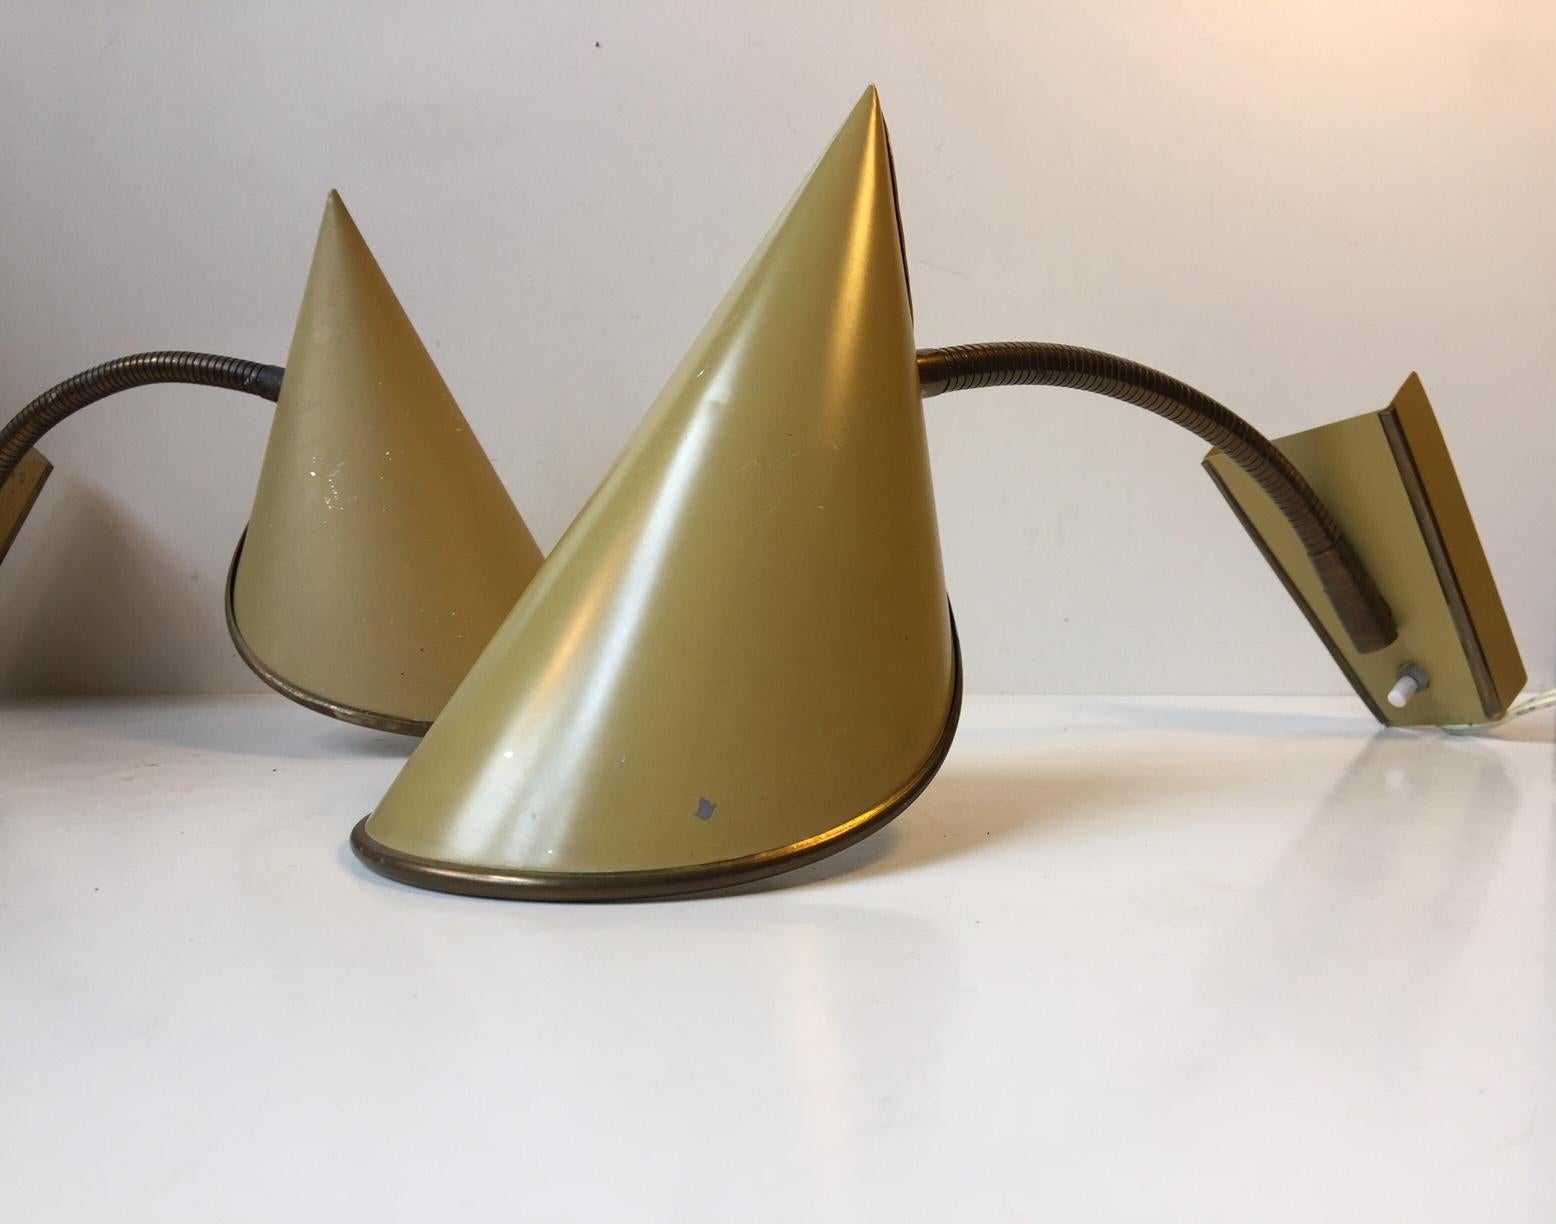 Cette paire d'appliques orientables a été fabriquée et conçue par Fog & Mørup au Danemark dans les années 1950. L'ensemble comprend des ombres pliées et pointues de couleur jaune pastel et un col de cygne flexible en laiton entièrement réglable. Le